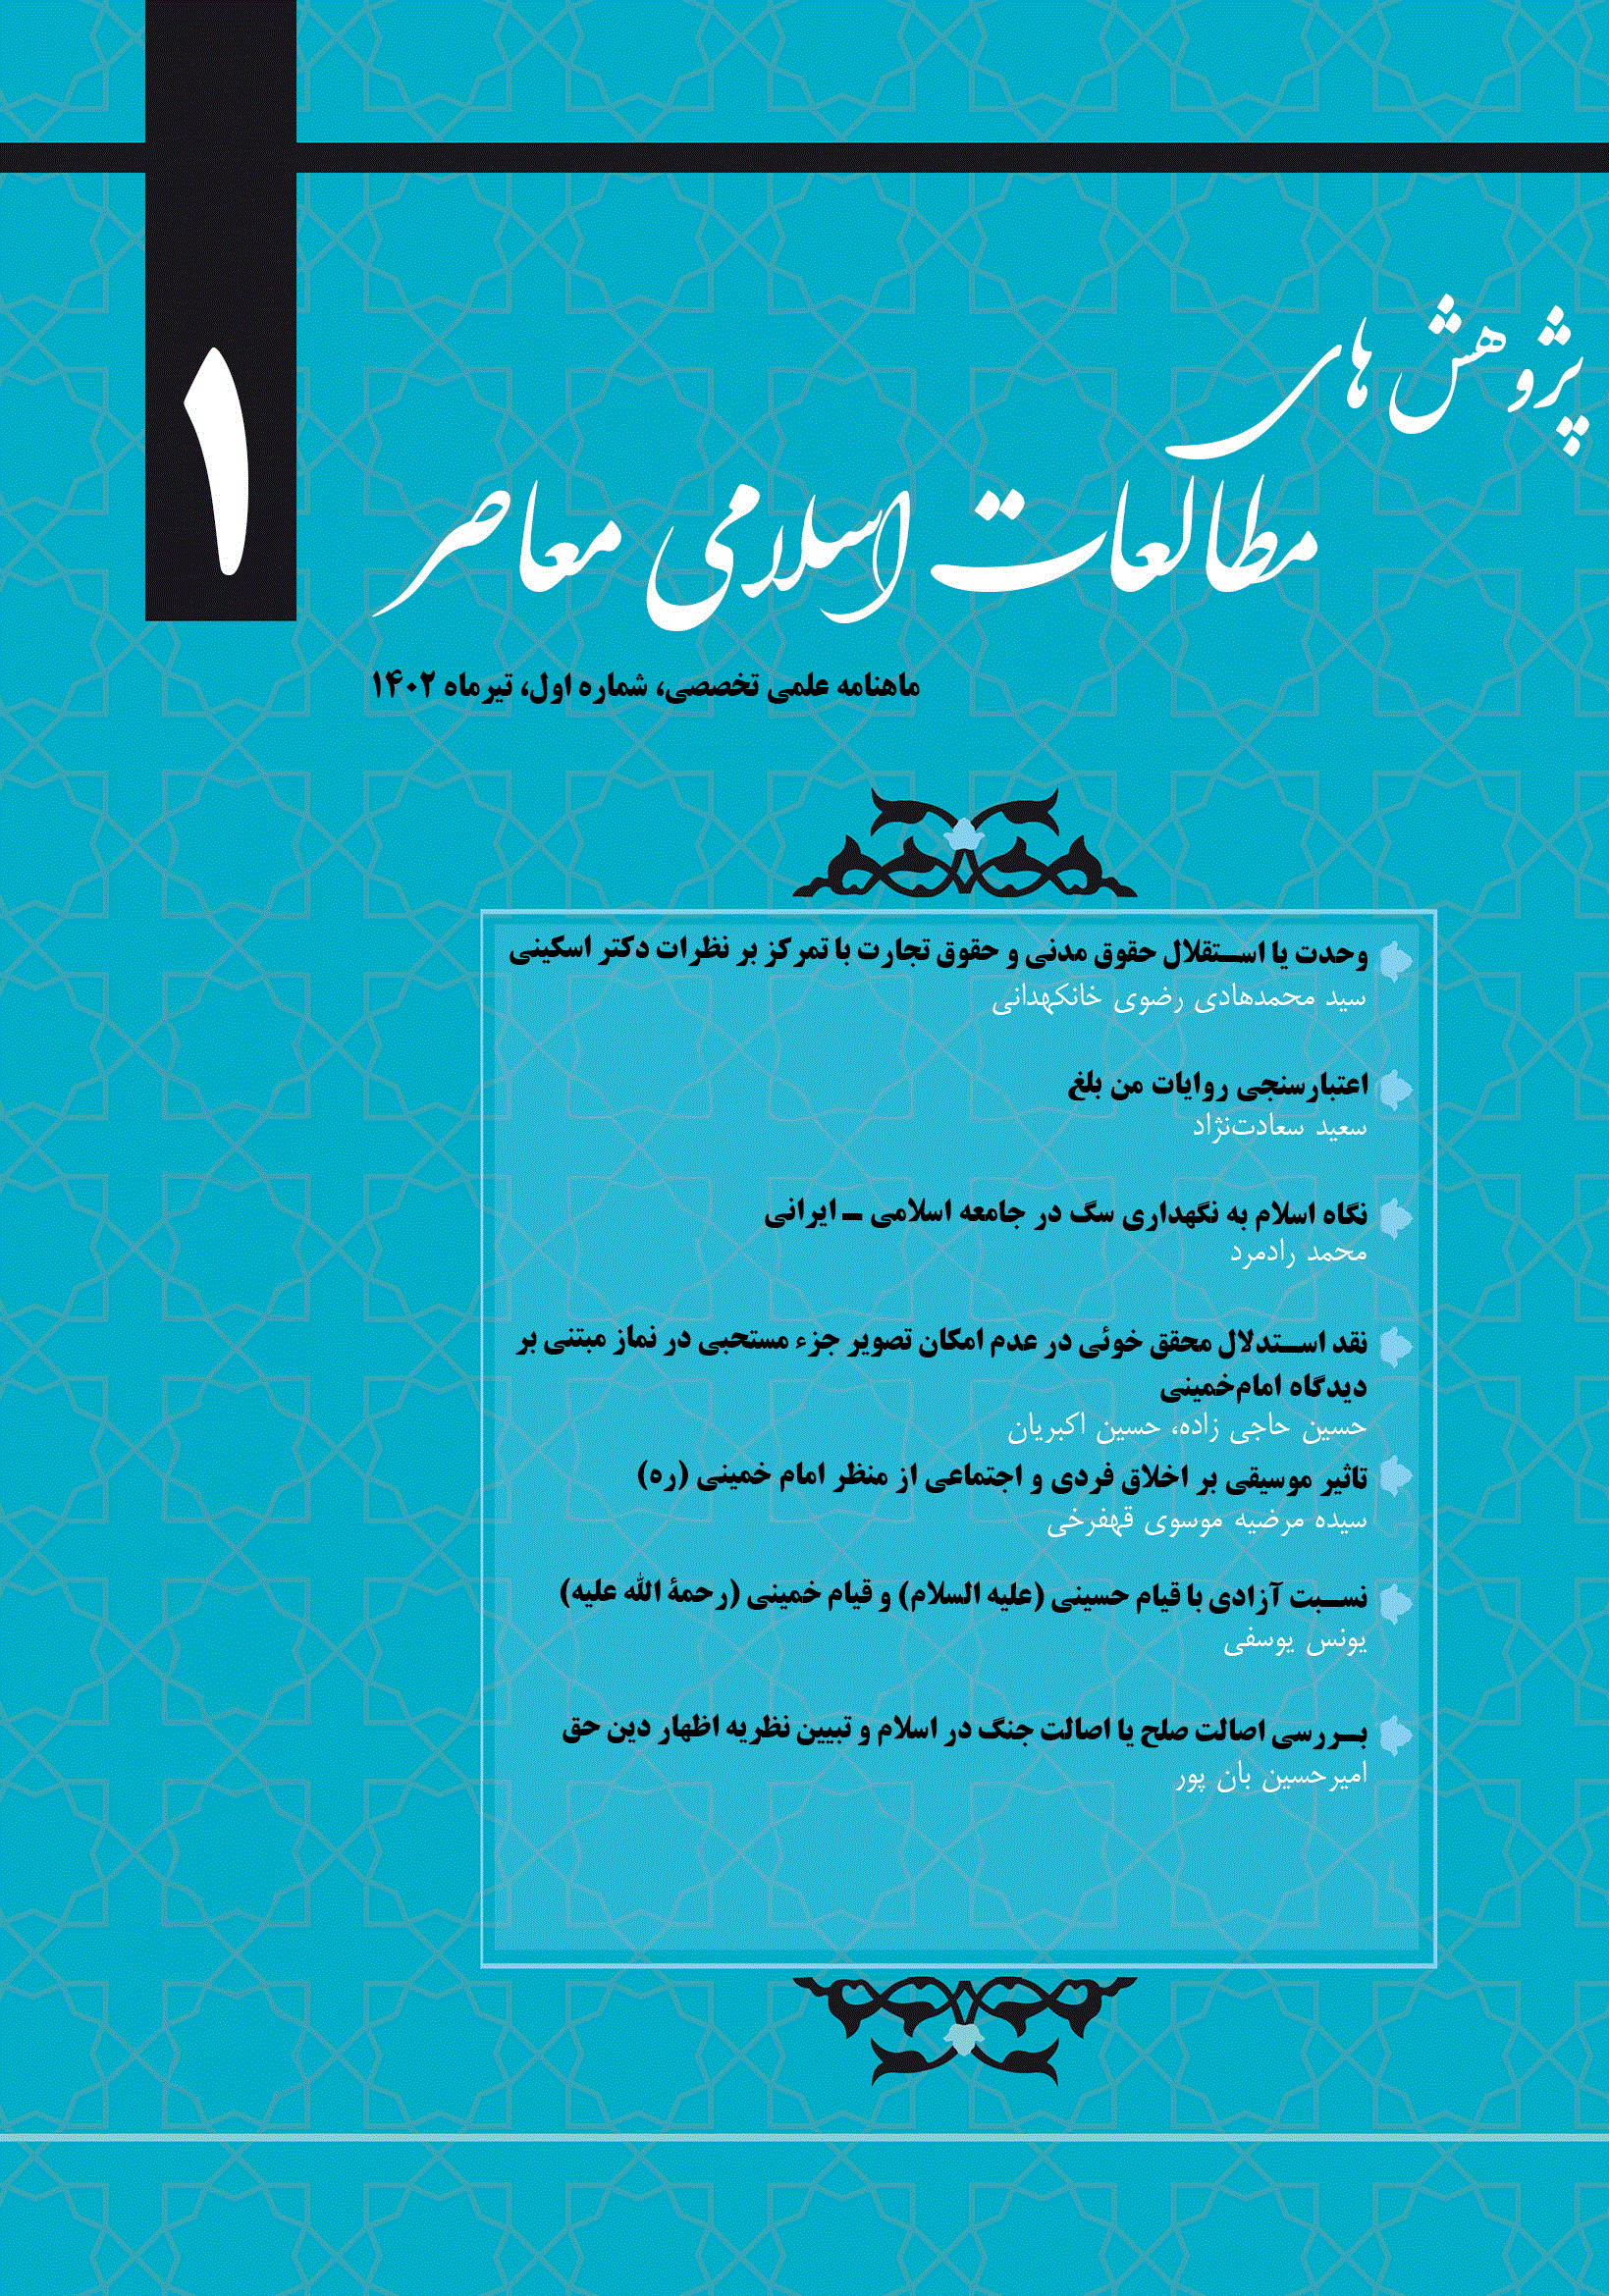 پژوهش های مطالعات اسلامی معاصر - شهریور 1402، دوره اول - شماره 3 (جلد 1)